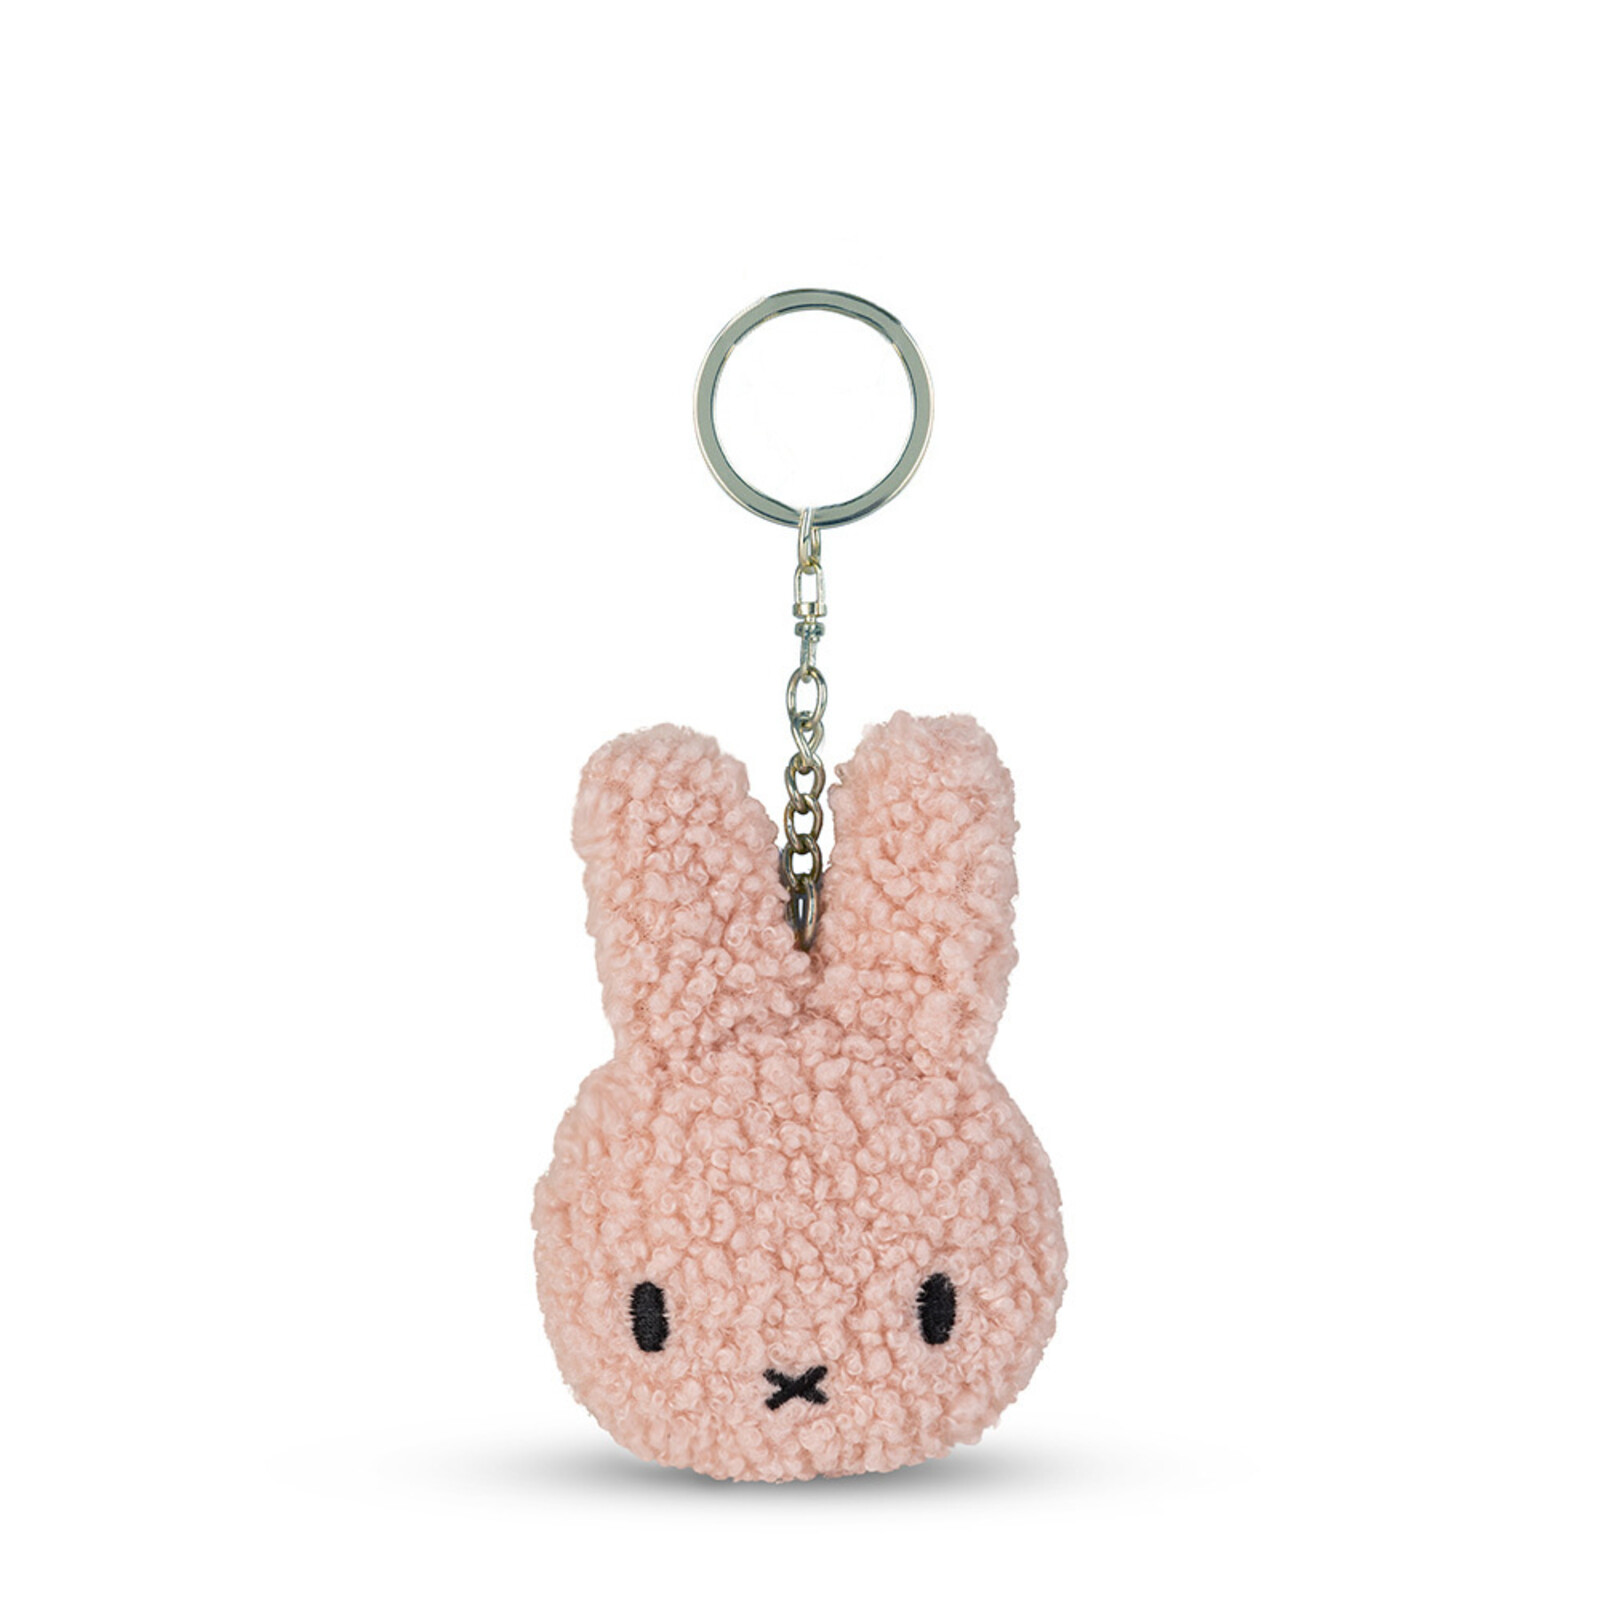 Miffy Flat Keychain Tiny Teddy Pink - 10 cm - 4"